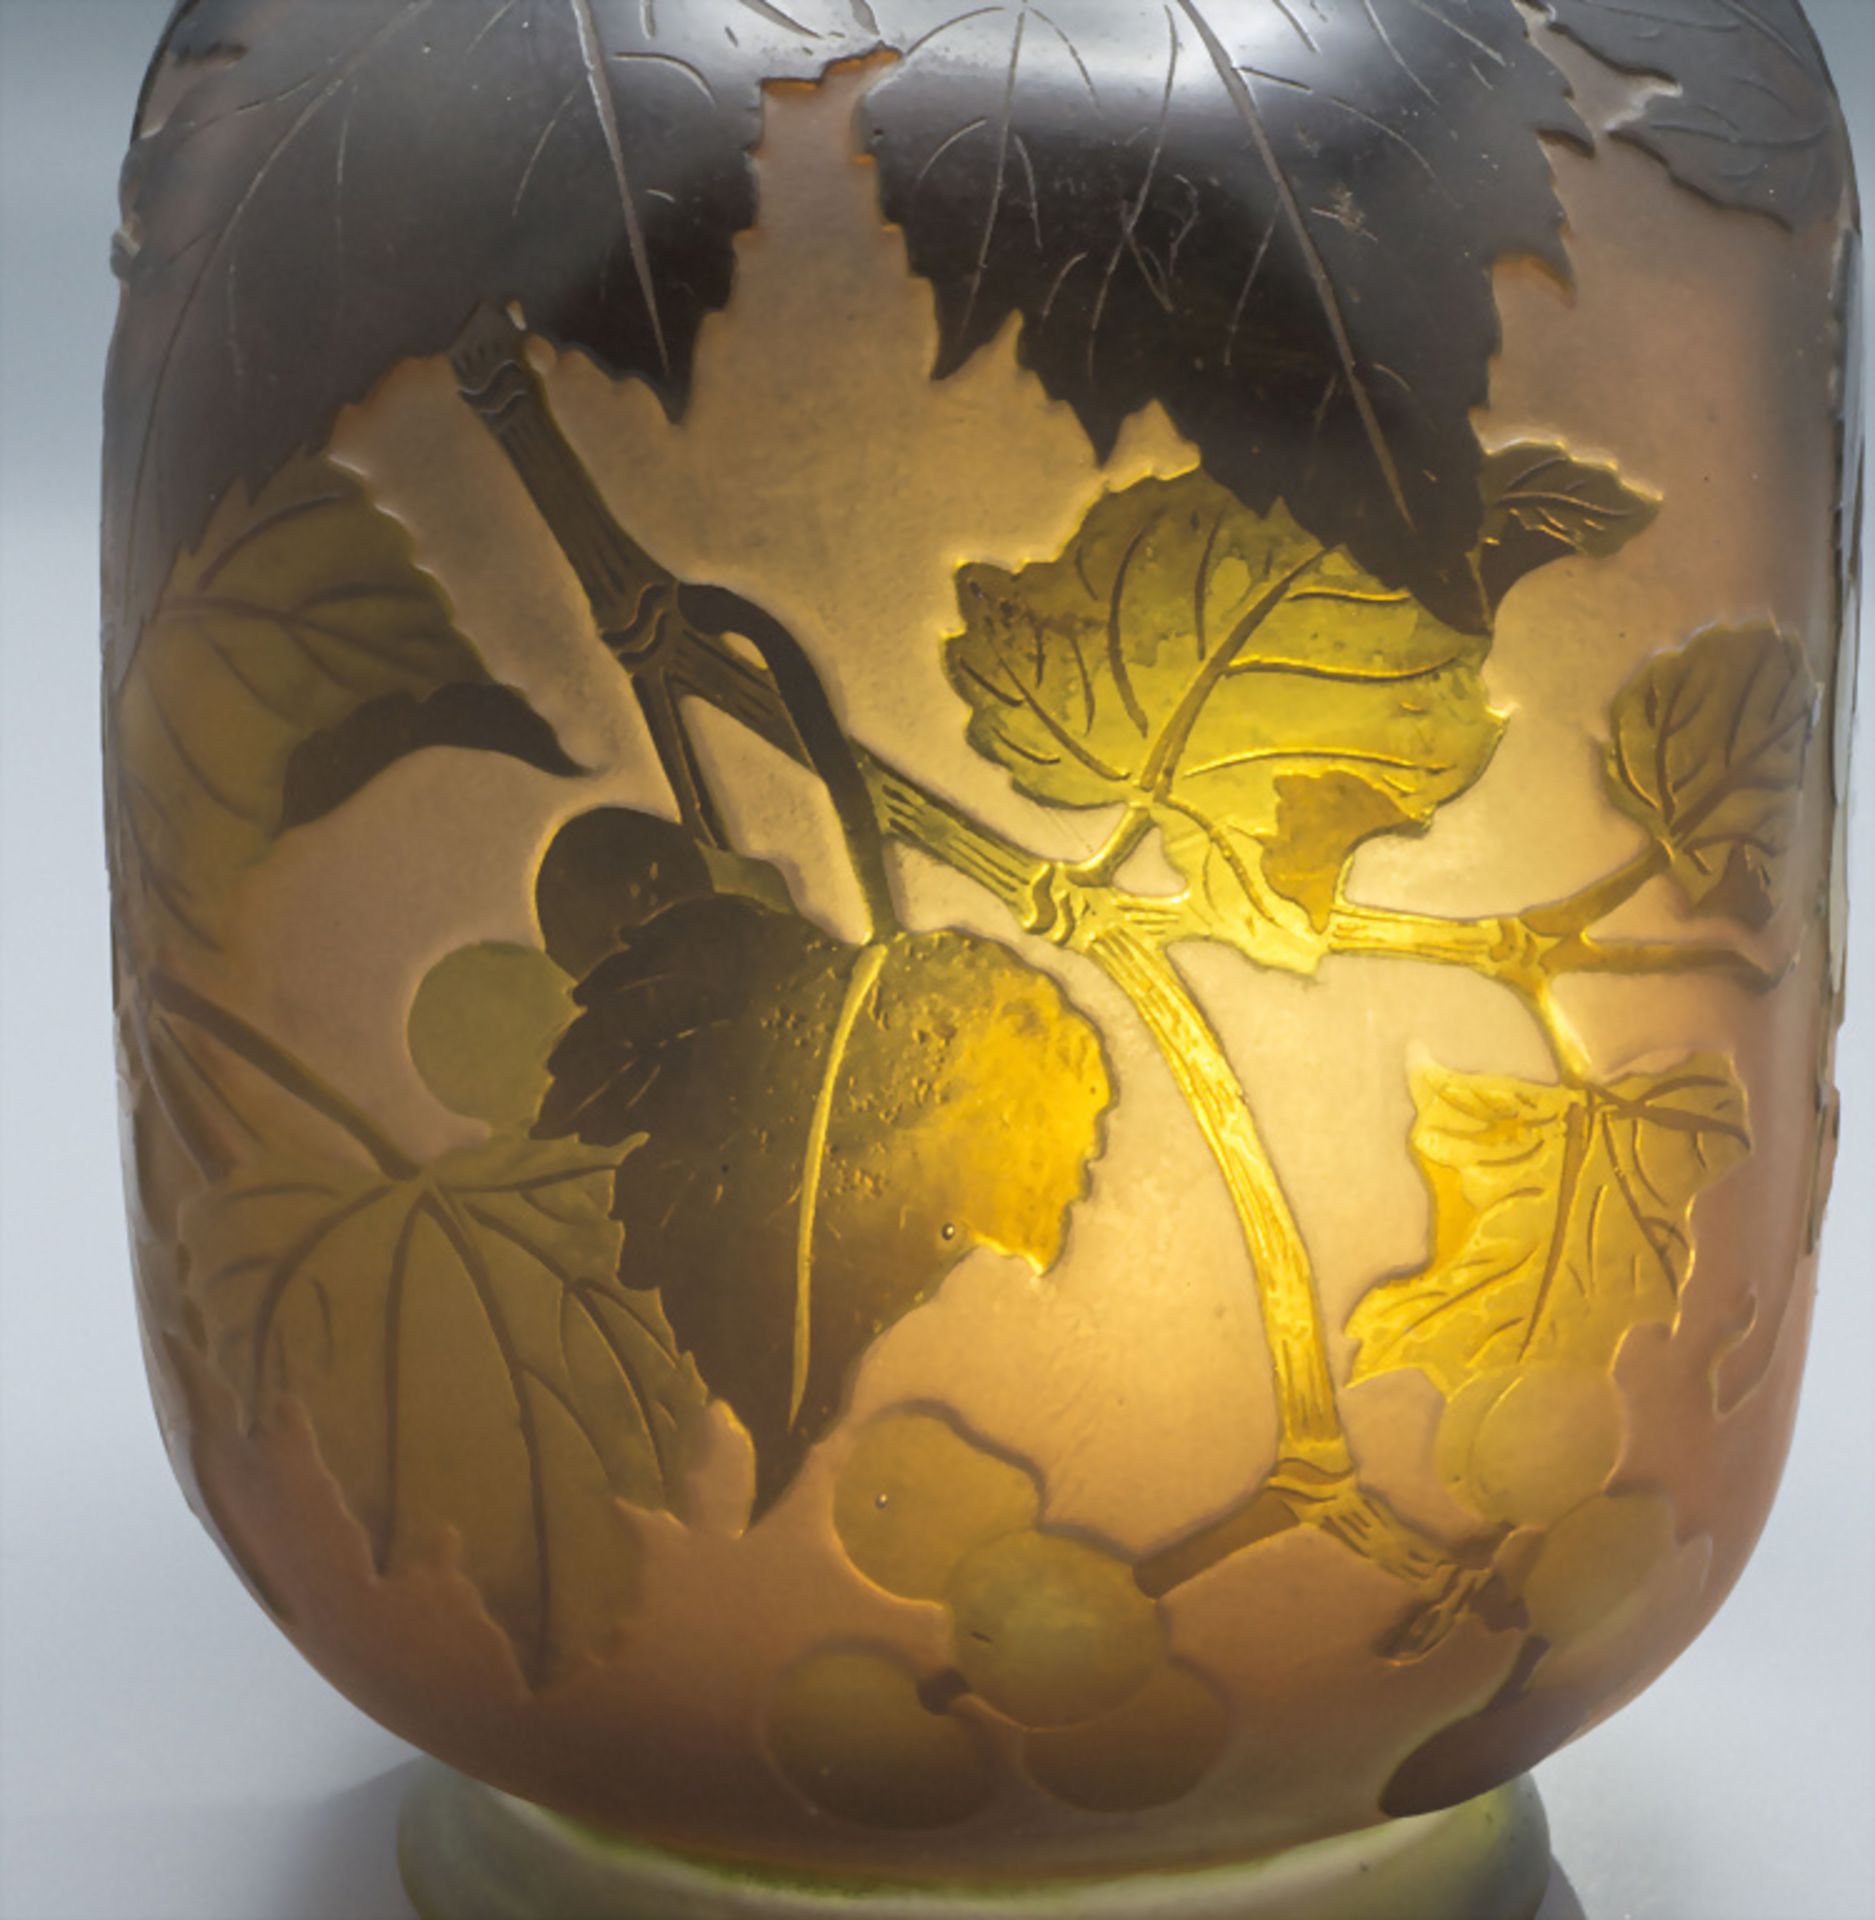 Jugendstil Vierkantvase mit Weinranken / An Art Nouveau square cameo glass vase with vine ... - Image 7 of 7